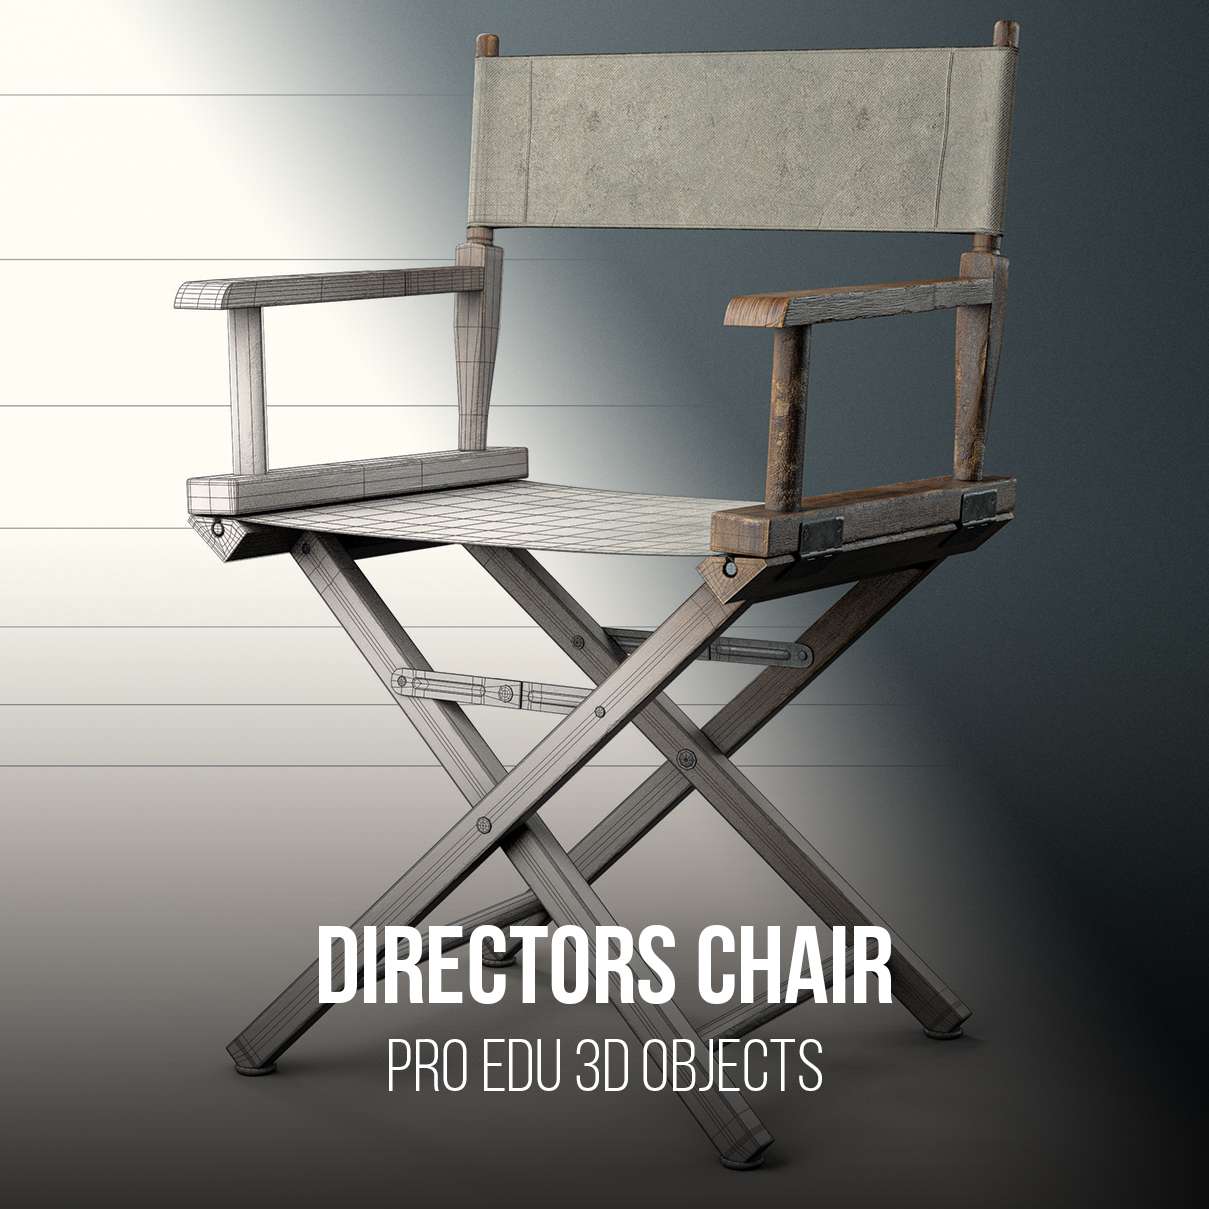 CGI Directors Chair 3D Model for Photoshop - PRO EDU PRO EDU PRO EDU